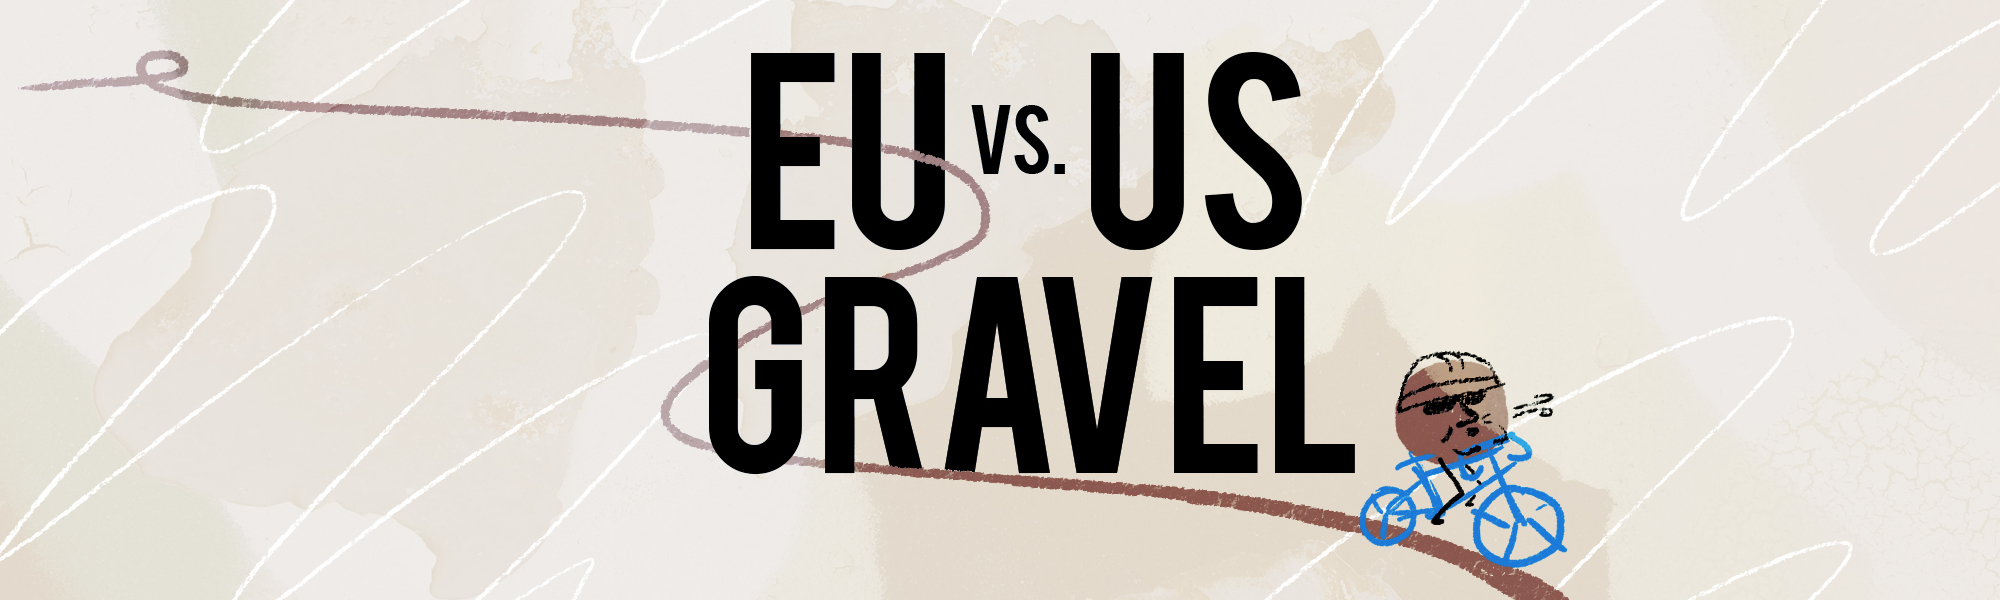 Europees gravel vs. Amerikaans gravel